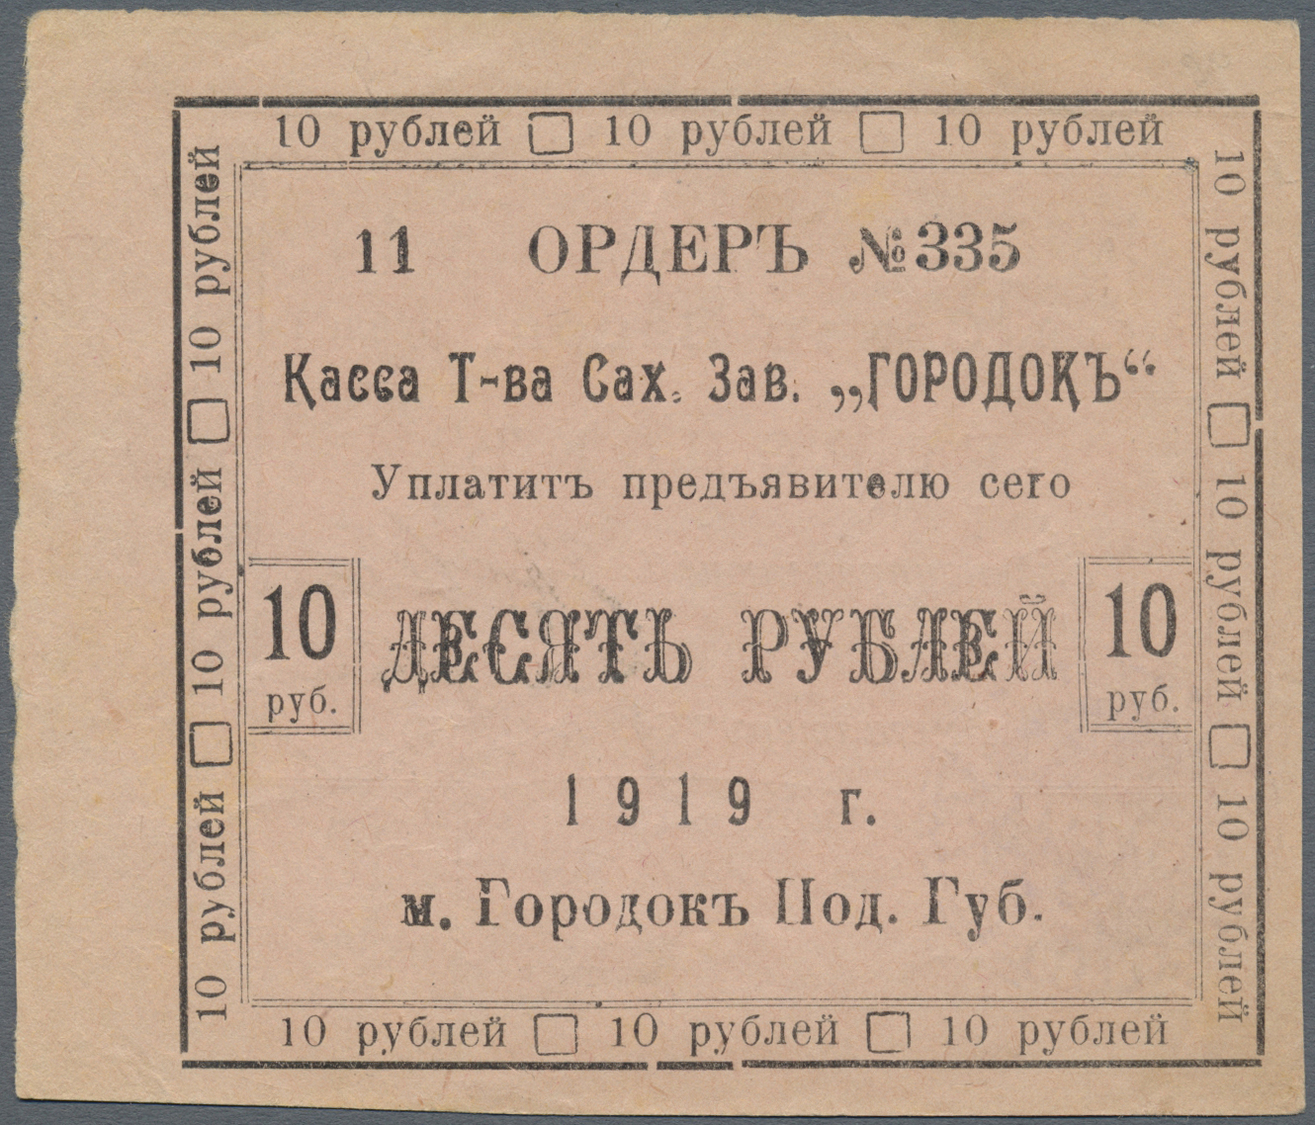 03262 Ukraina / Ukraine: Association Of Sugar Factory "Gorodok" (&#x422;&#x43E;&#x432;&#x430;&#x440;&#x438;&#x449;&#x435 - Ukraine